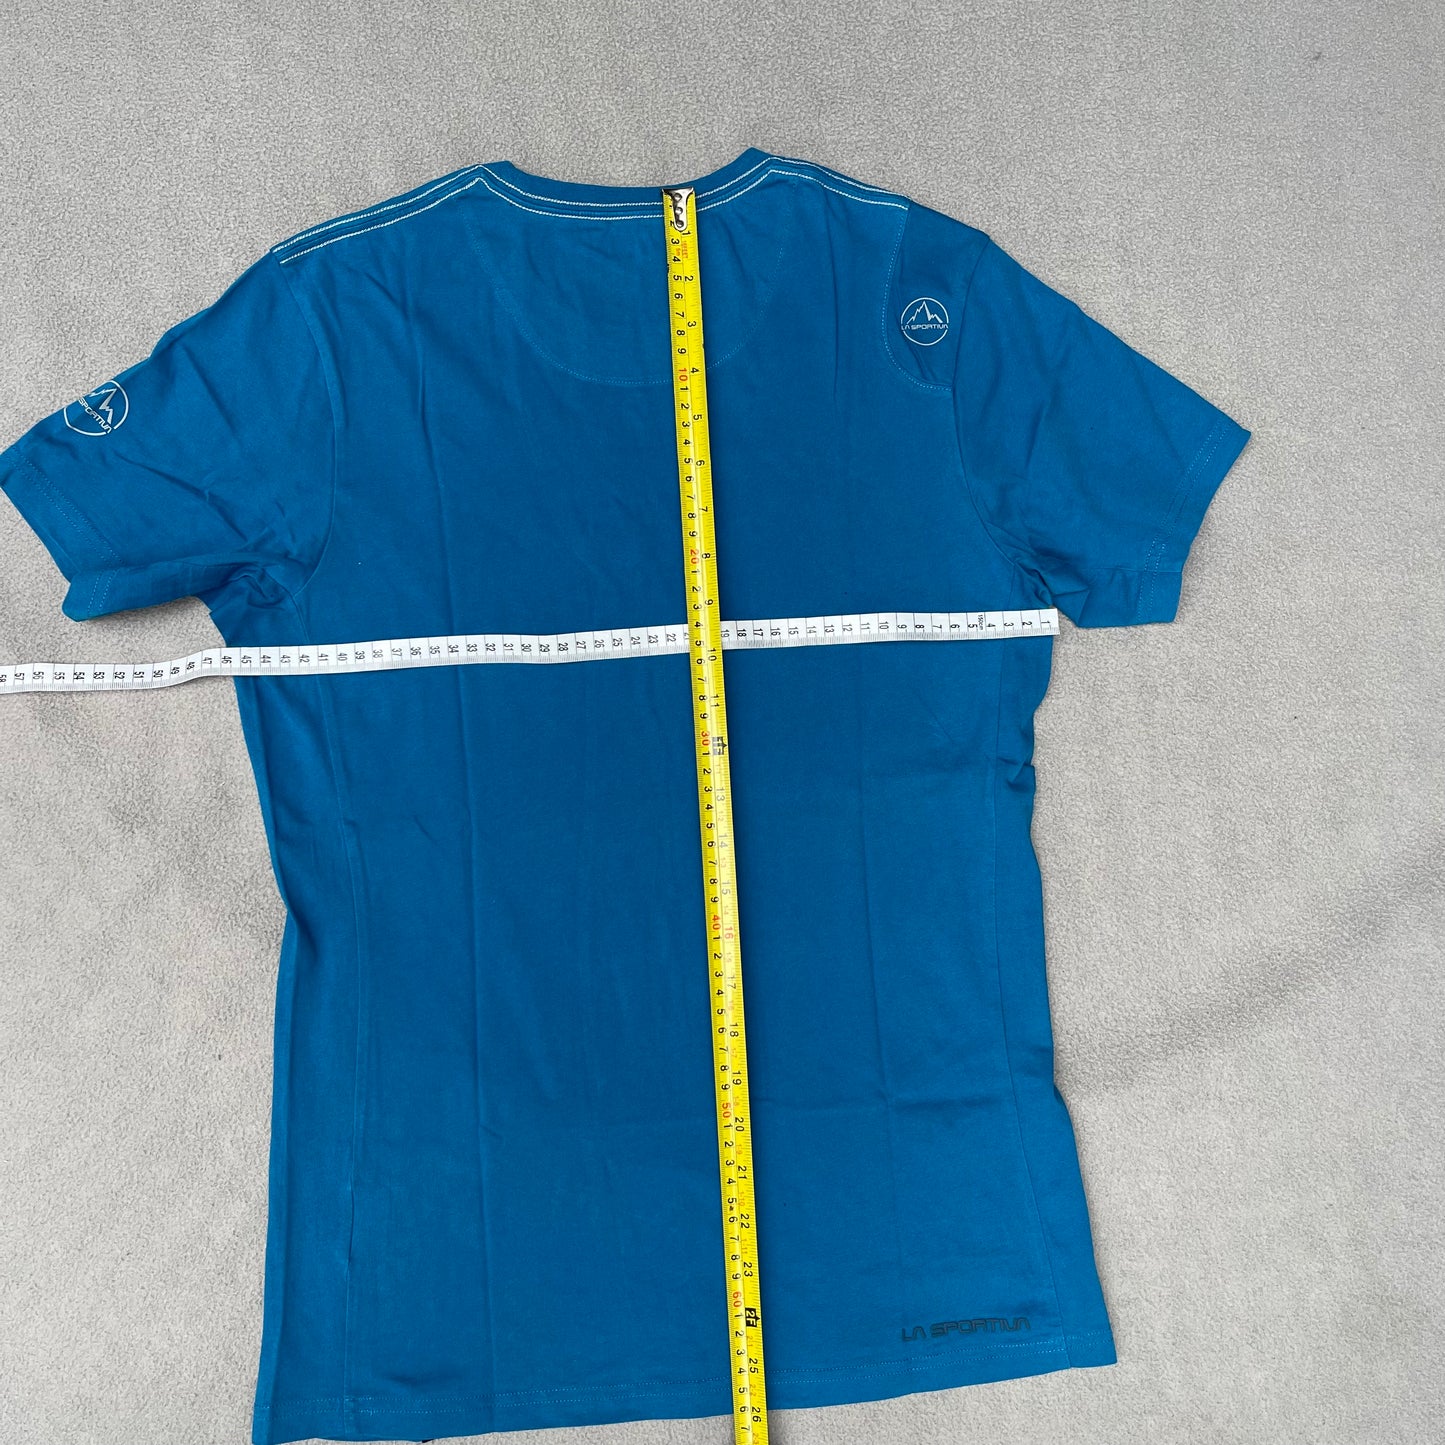 T-Shirt von La Sportiva S Herren 100% Baumwolle blau mit Print